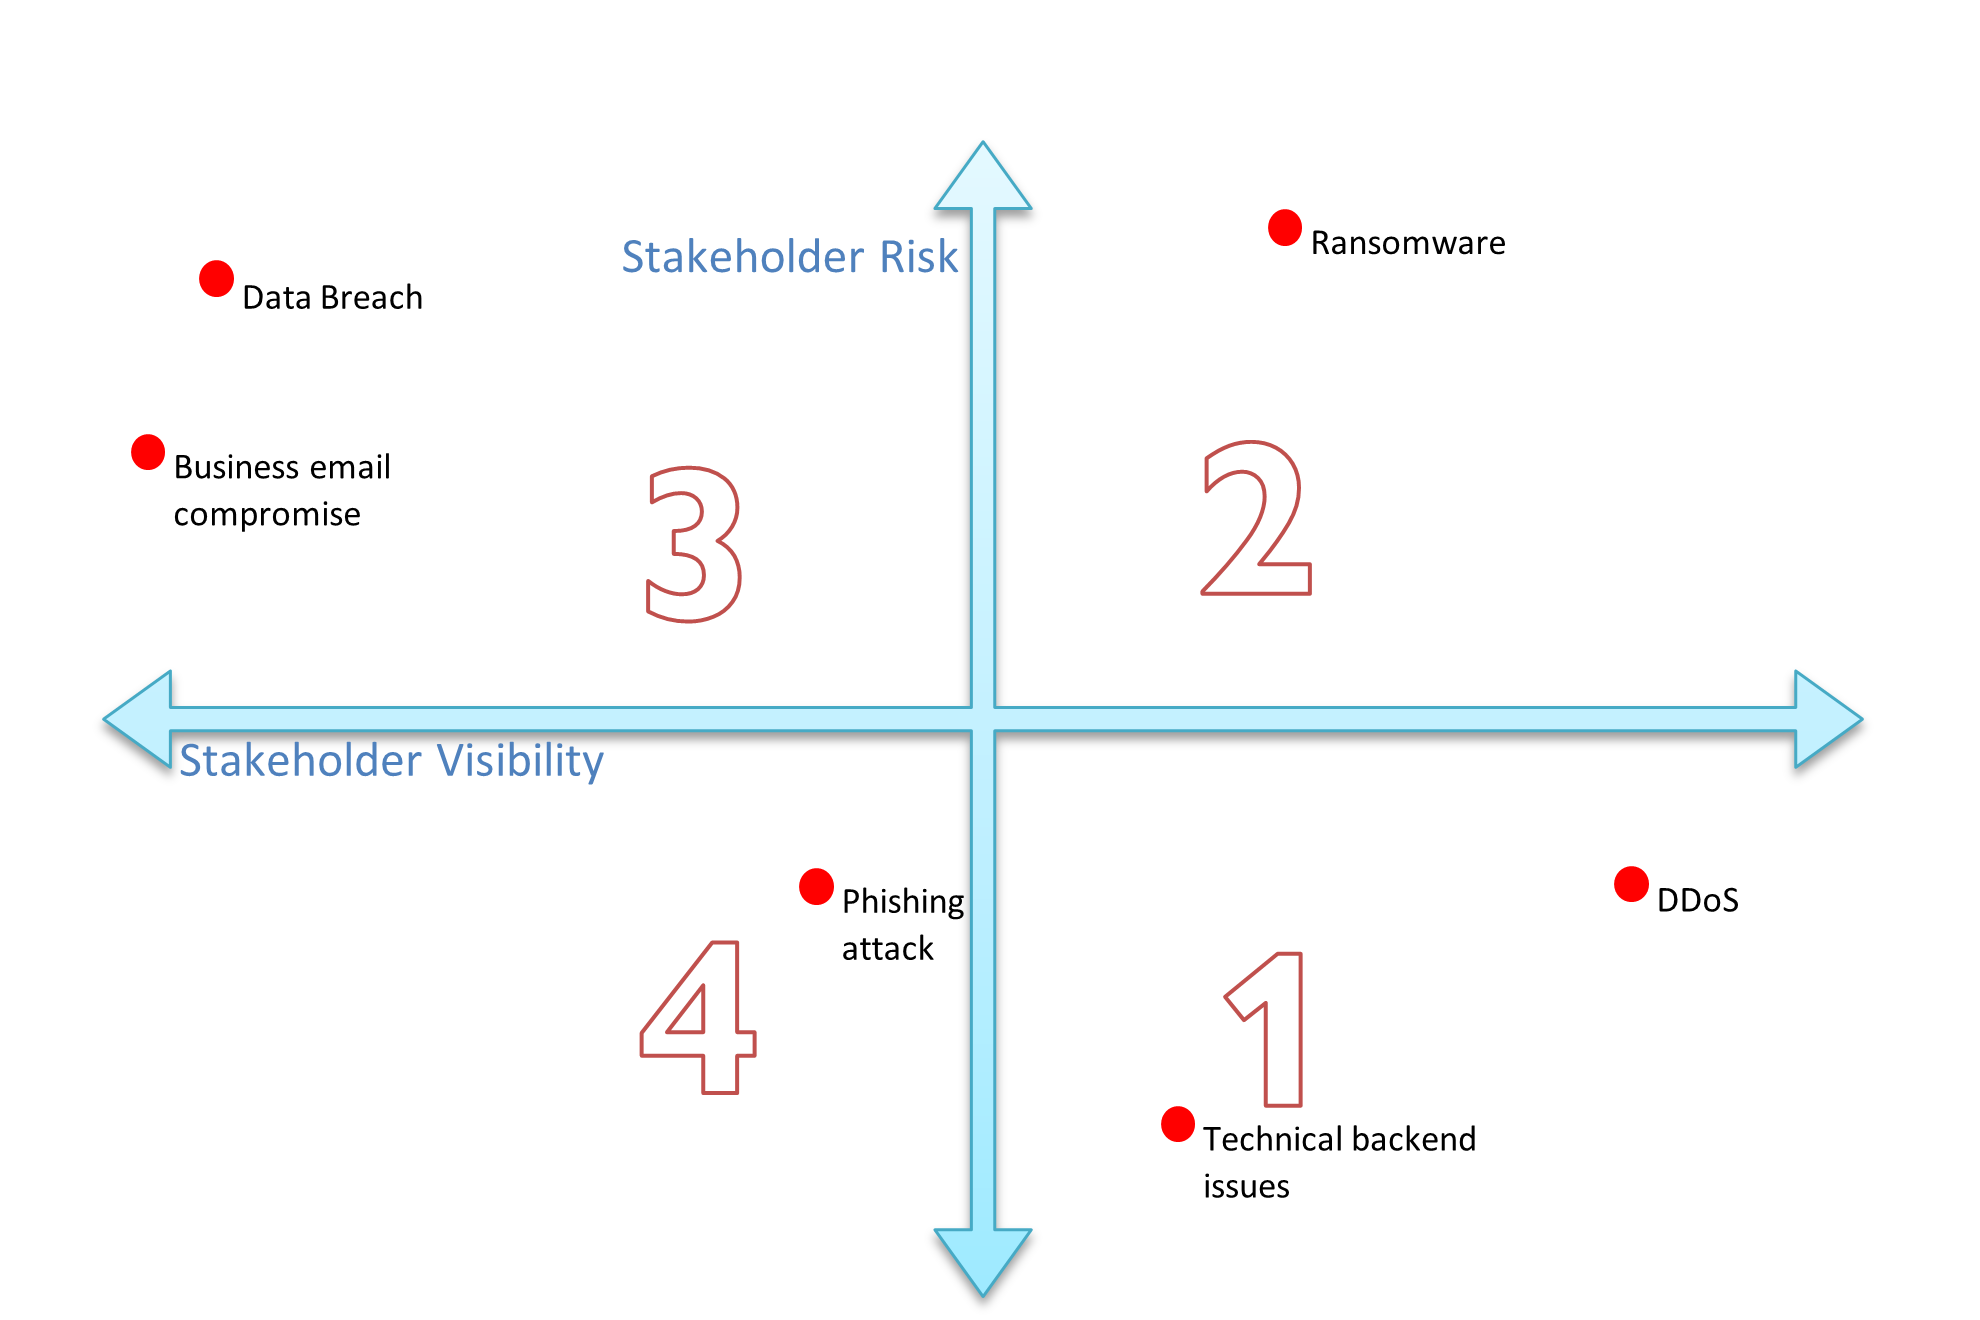 stakeholder risk vs visibility matrix quadrants